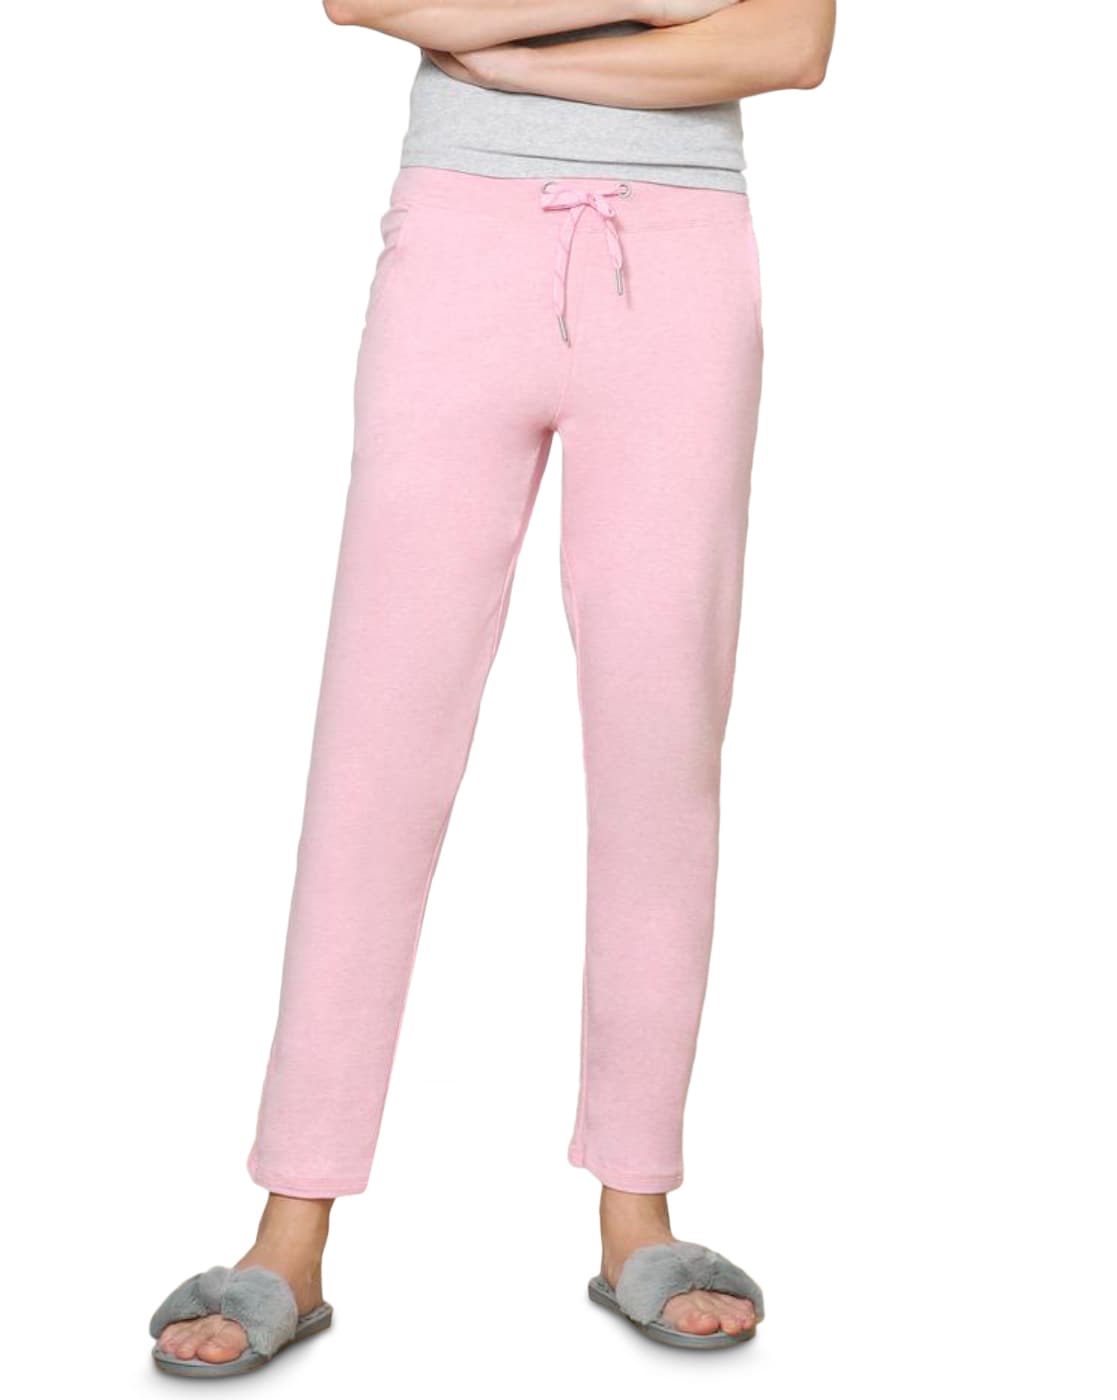 Buy Pink Track Pants for Women by VAN HEUSEN Online